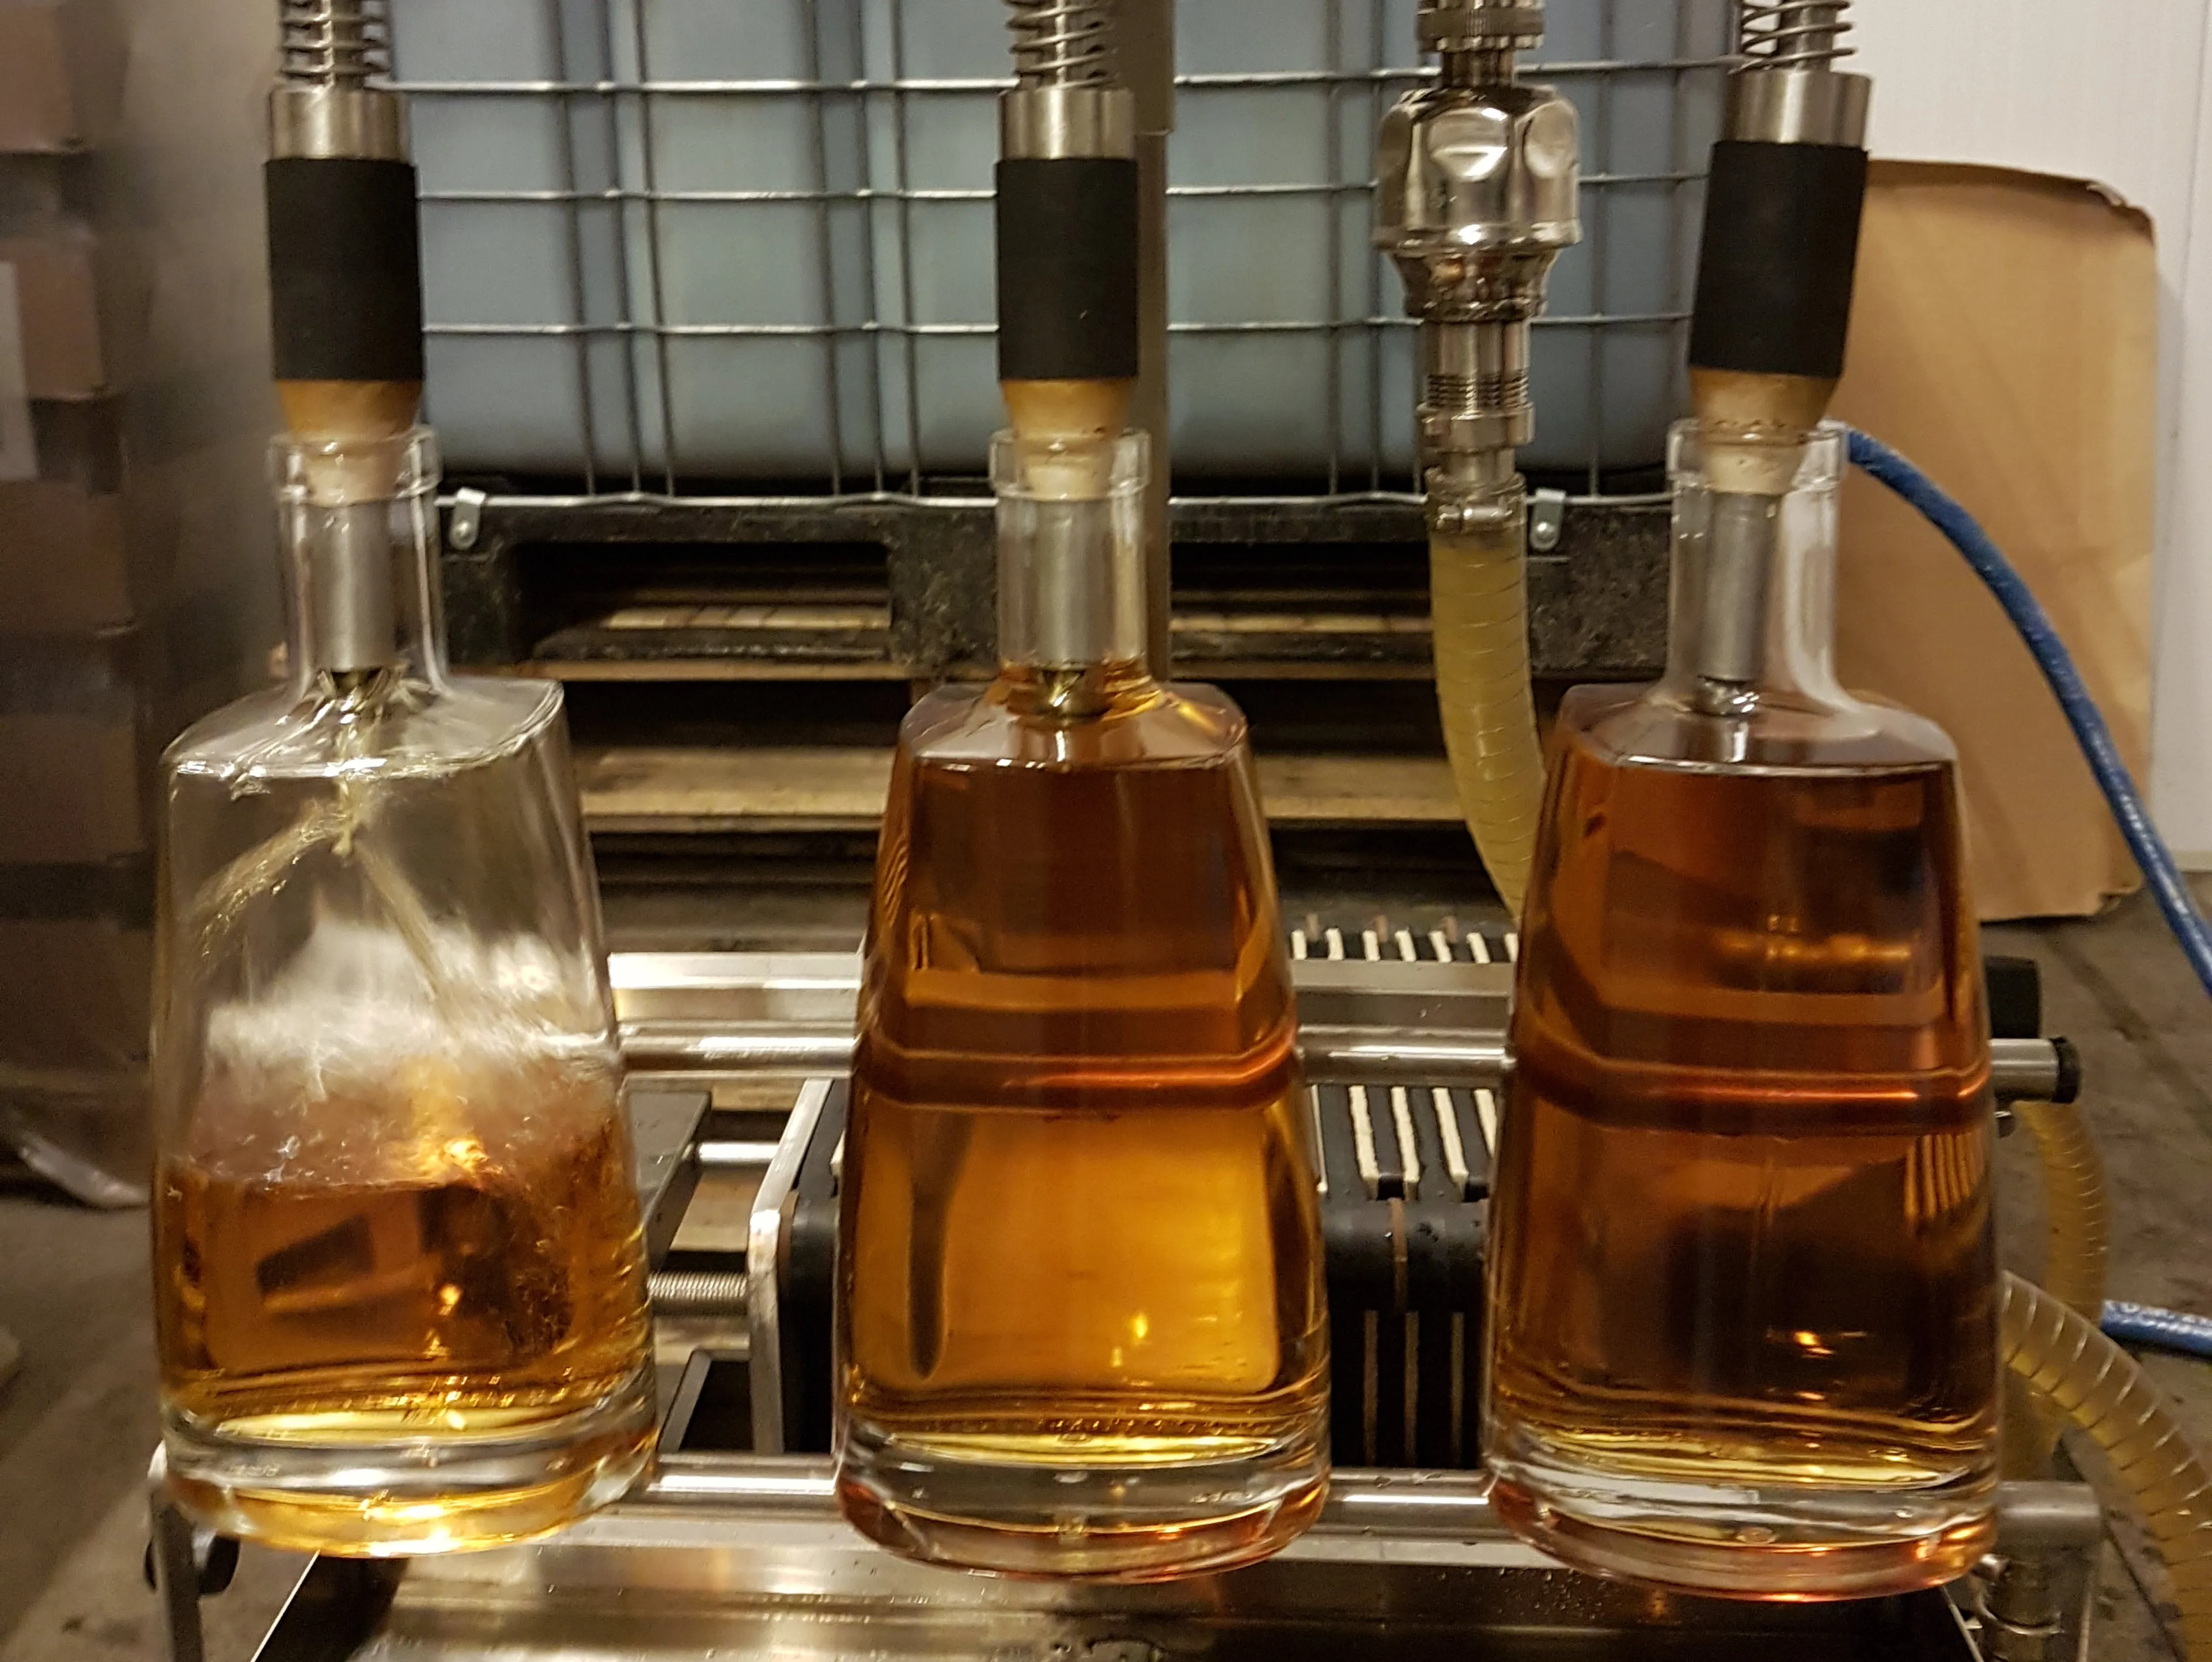 De Den Hool whisky wordt gebotteld in mooie flessen.